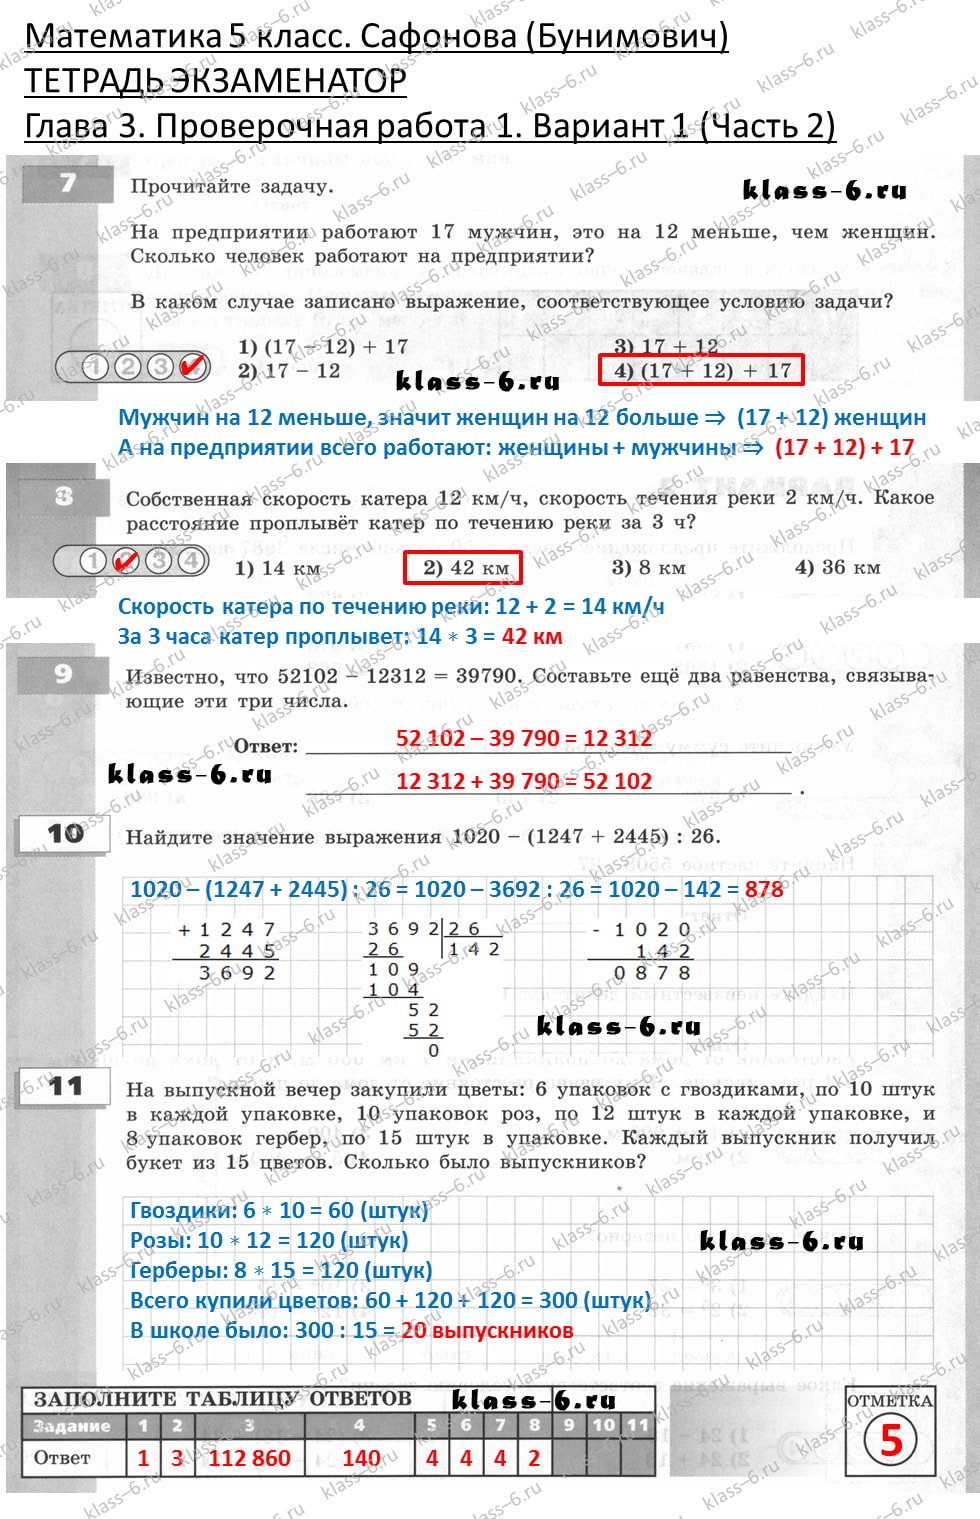 решебник и гдз по математике тетрадь экзаменатор Сафонова, Бунимович 5 класс глава 3 контрольная работа 1 вариант 1 (2)